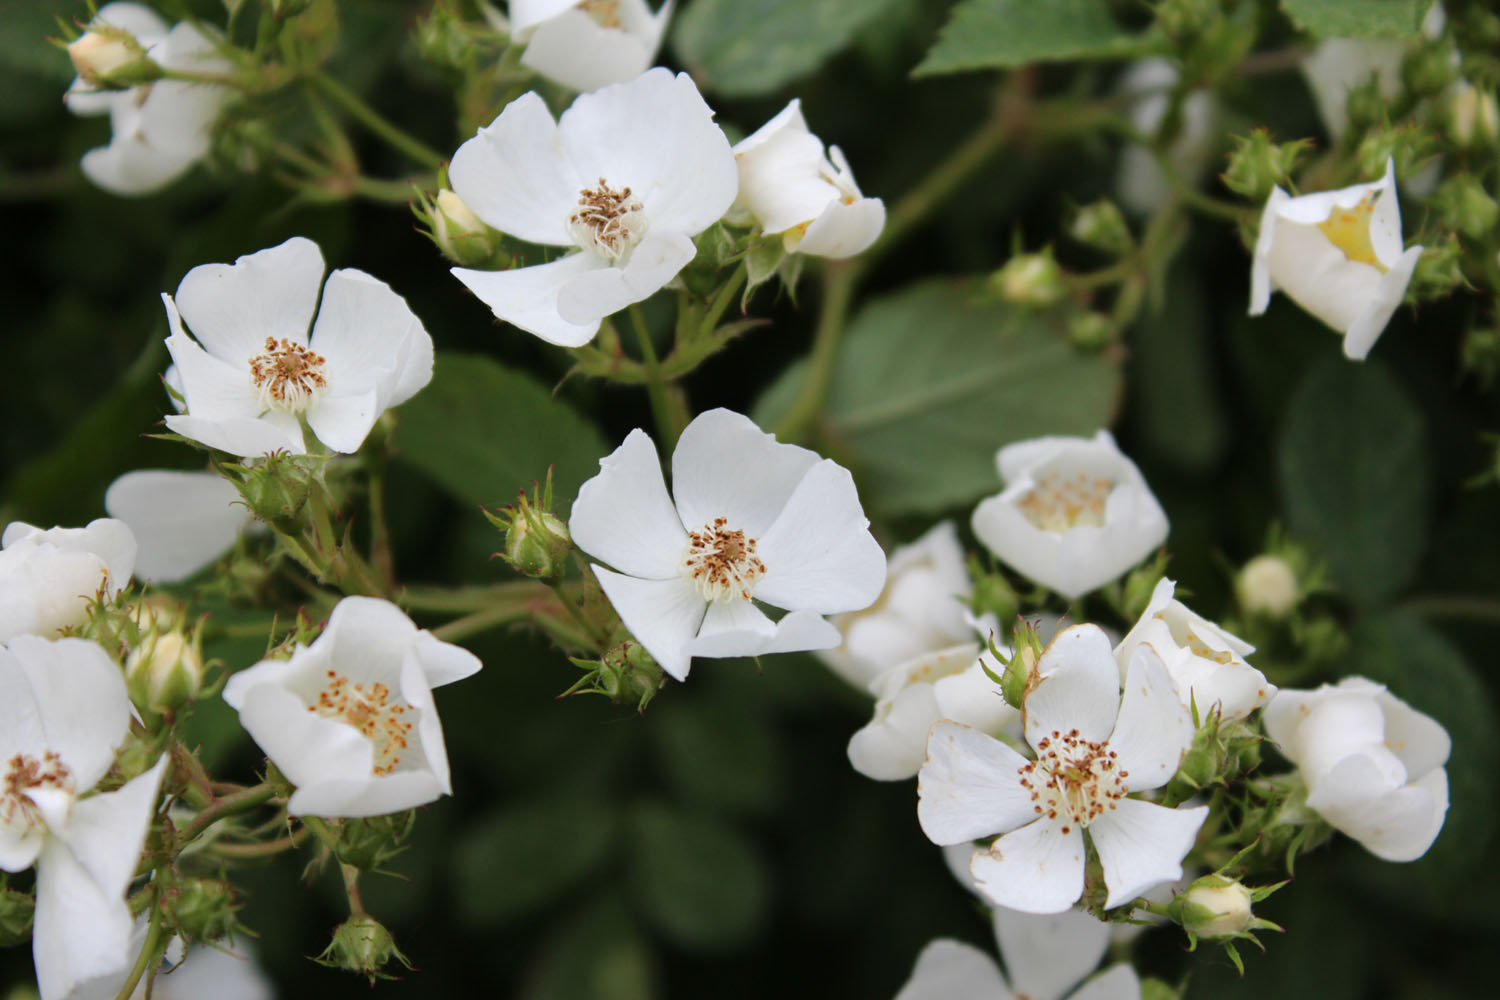 Edible Wild White Roses